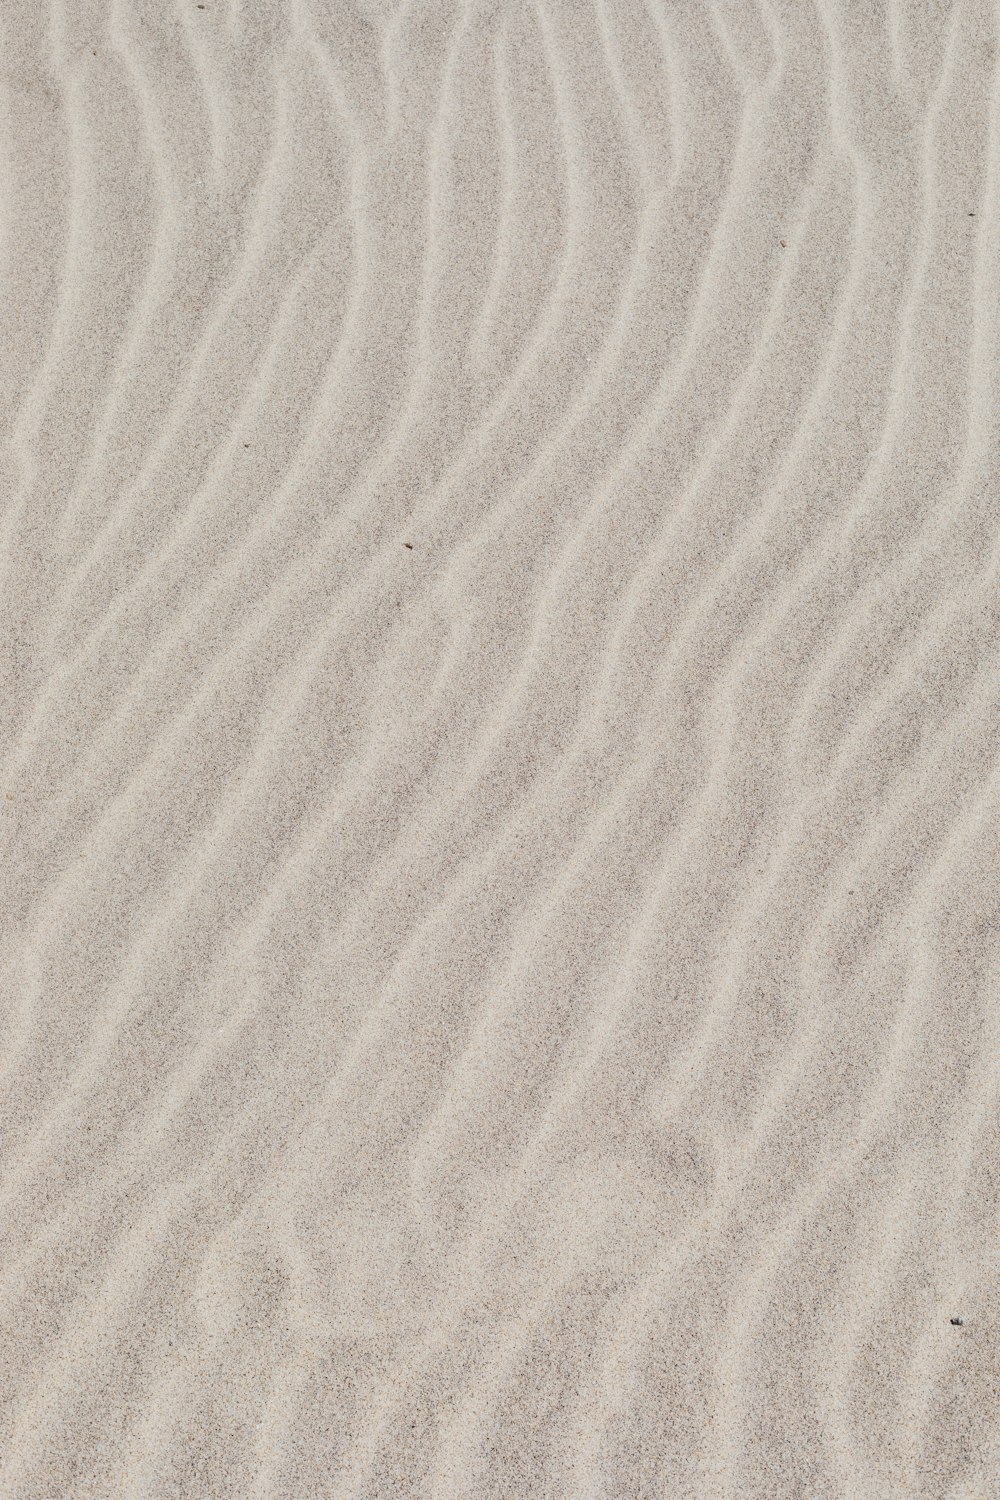 사람의 그림자가 있는 하얀 모래